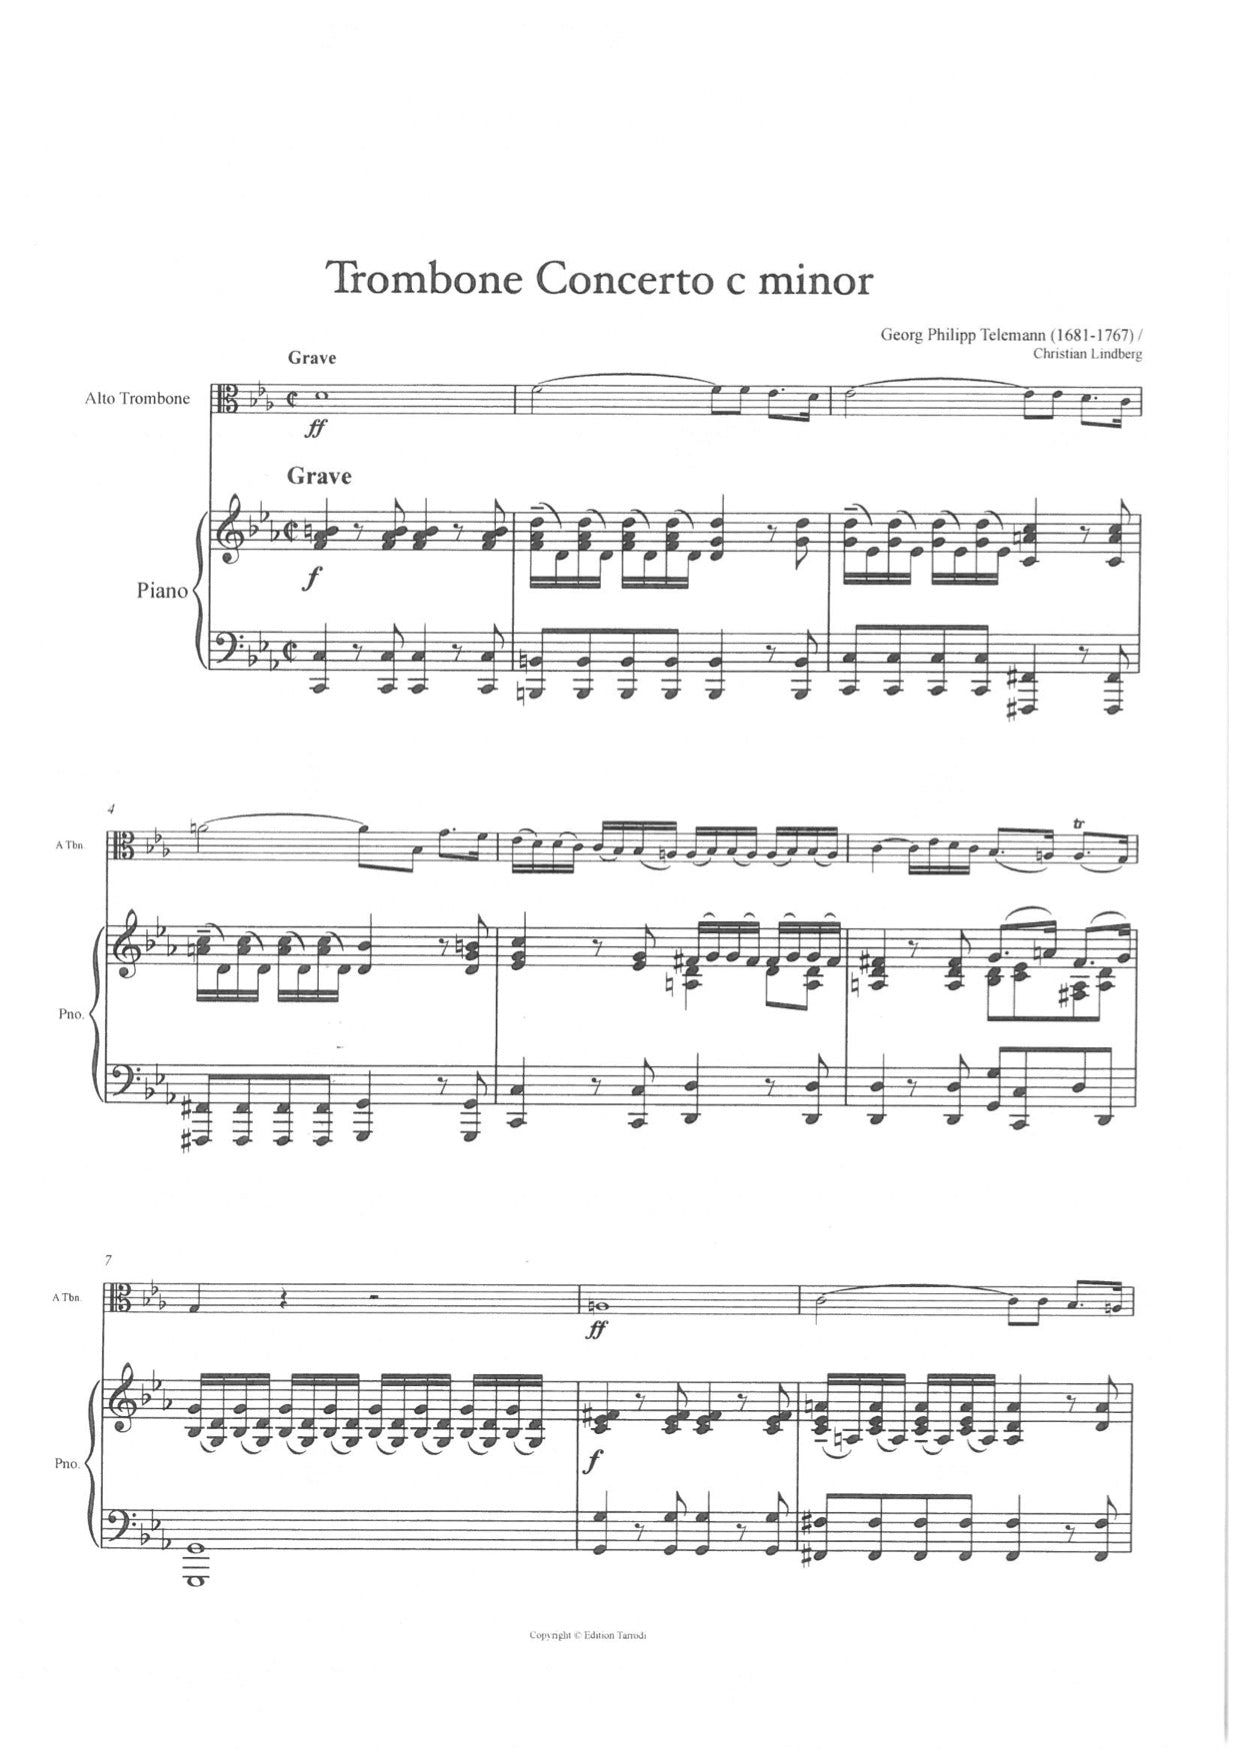 Telemann / Tarrodi -  Alto Trombone concerto c minor Alto Trb & Piano/Cembalo